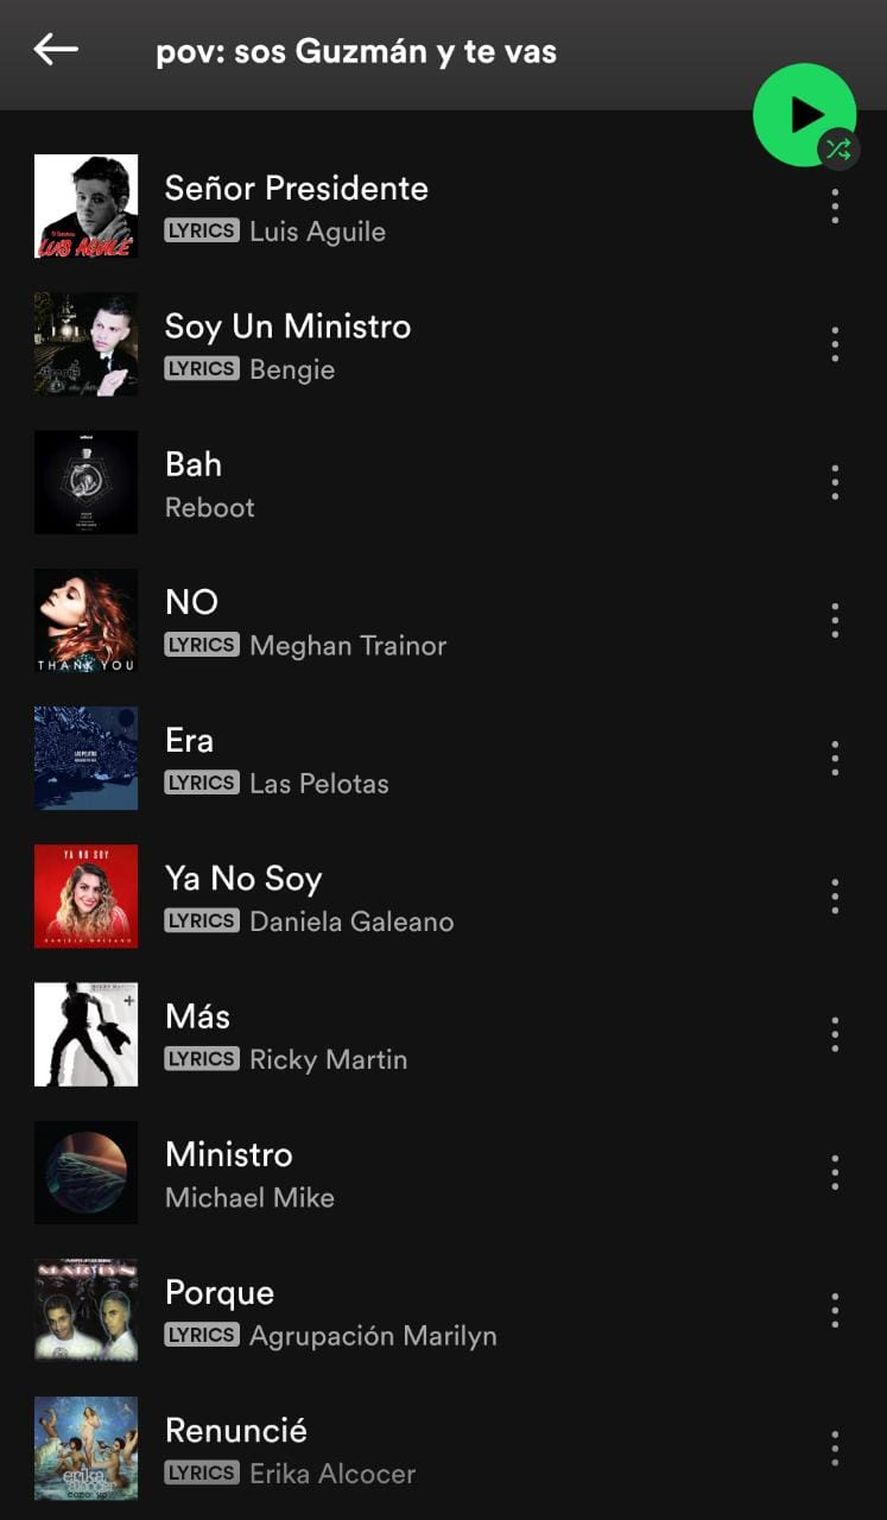 La playlist de Spotify dedicada a la renuncia de Martín Guzmán hilvana 49 temas de variada y ecléctica selección, cuyos títulos arman una oración memorable